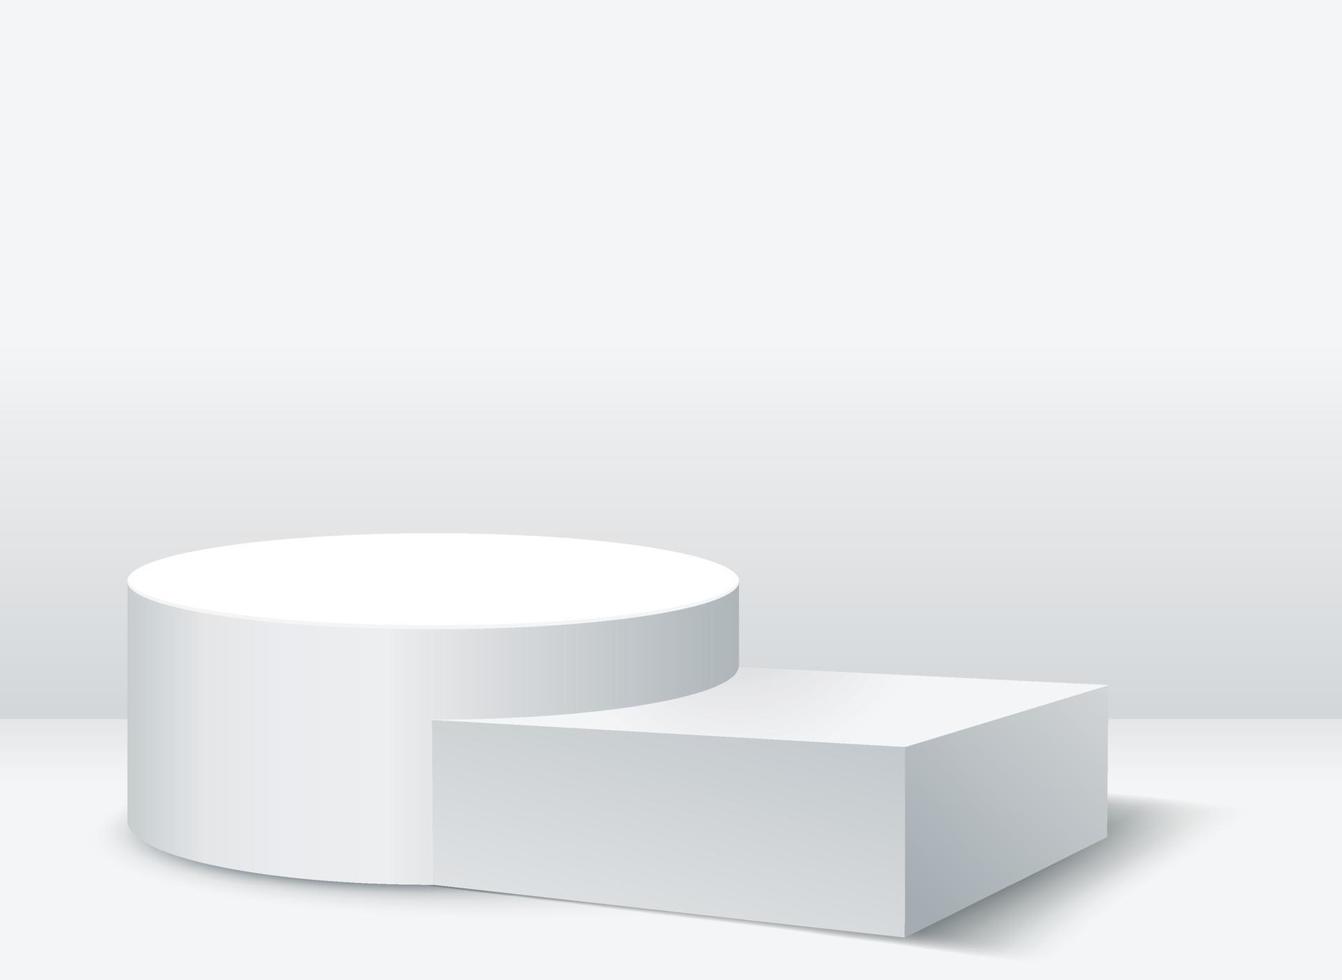 Mockup zylindrisches Podium und rechteckiges Podium für die Produktpräsentation auf weißem Hintergrund vektor